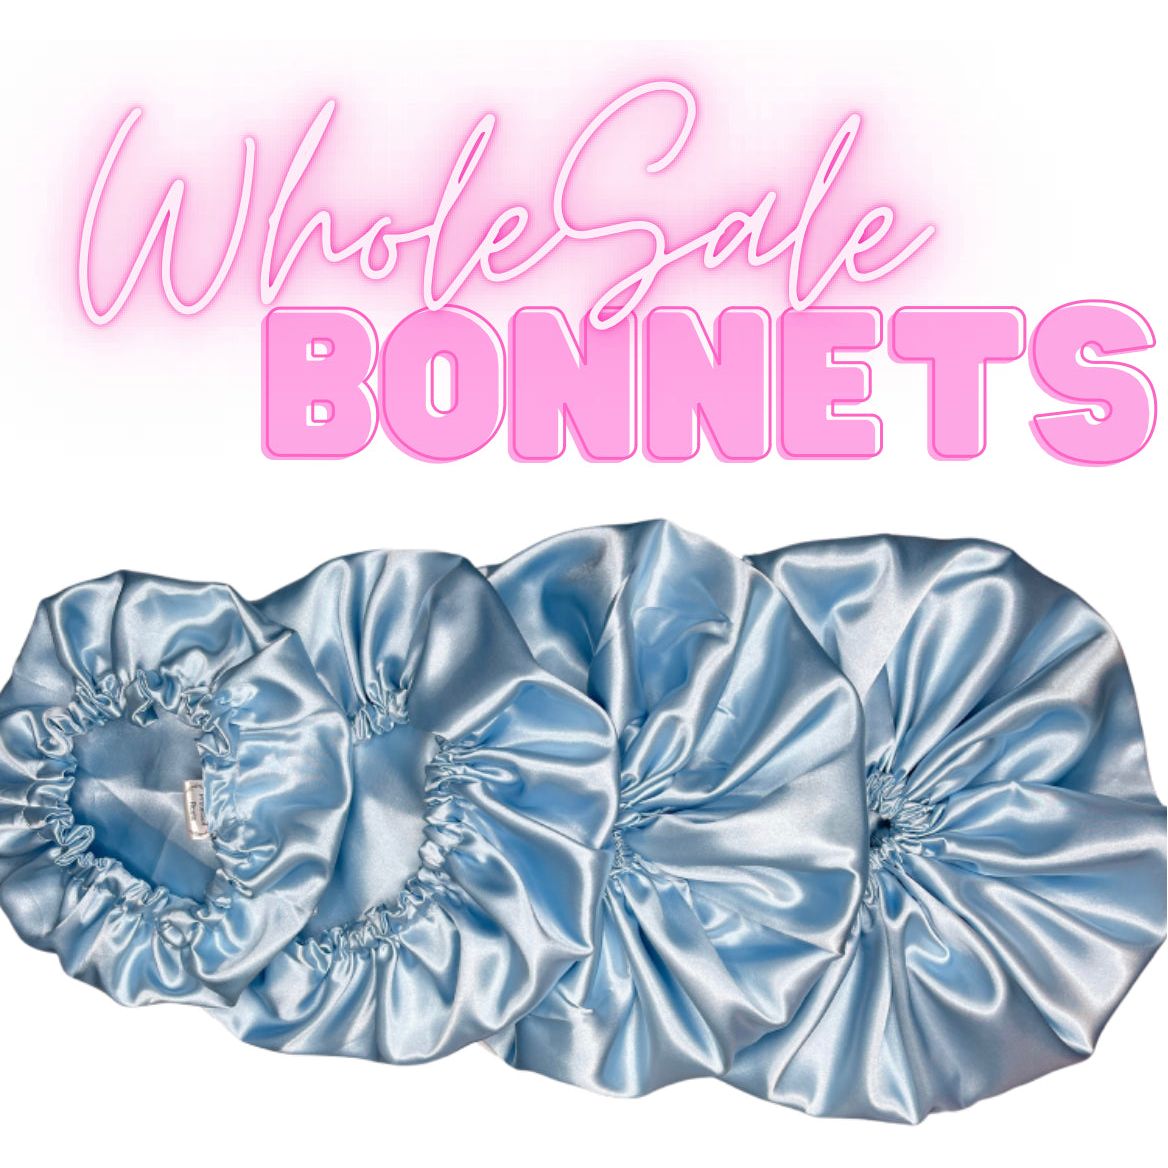 Wholesale Bonnets